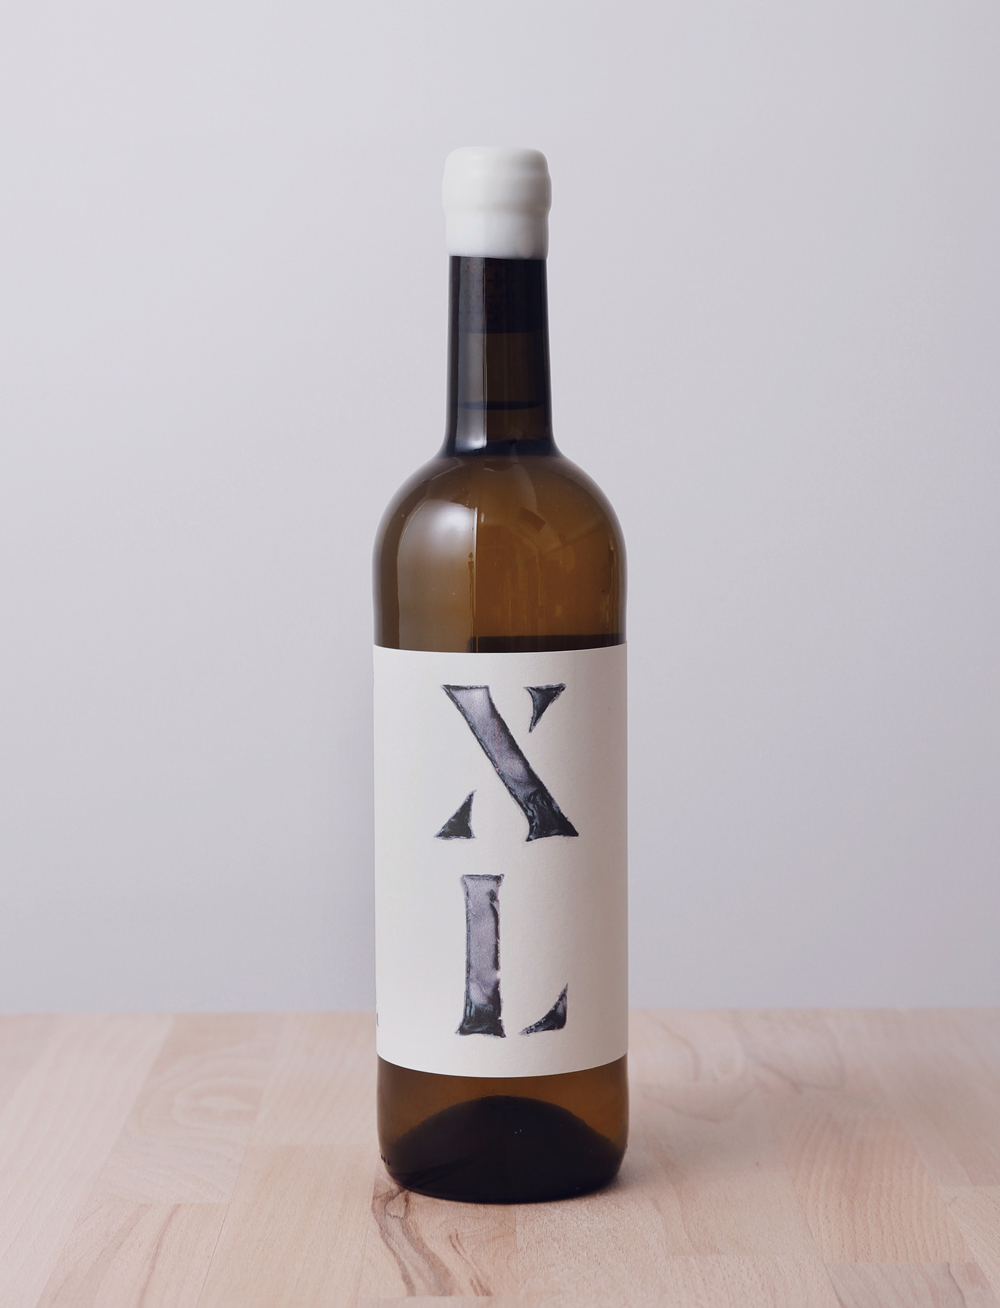 XL Xarel-lo Blanc 2016, Partida Creus